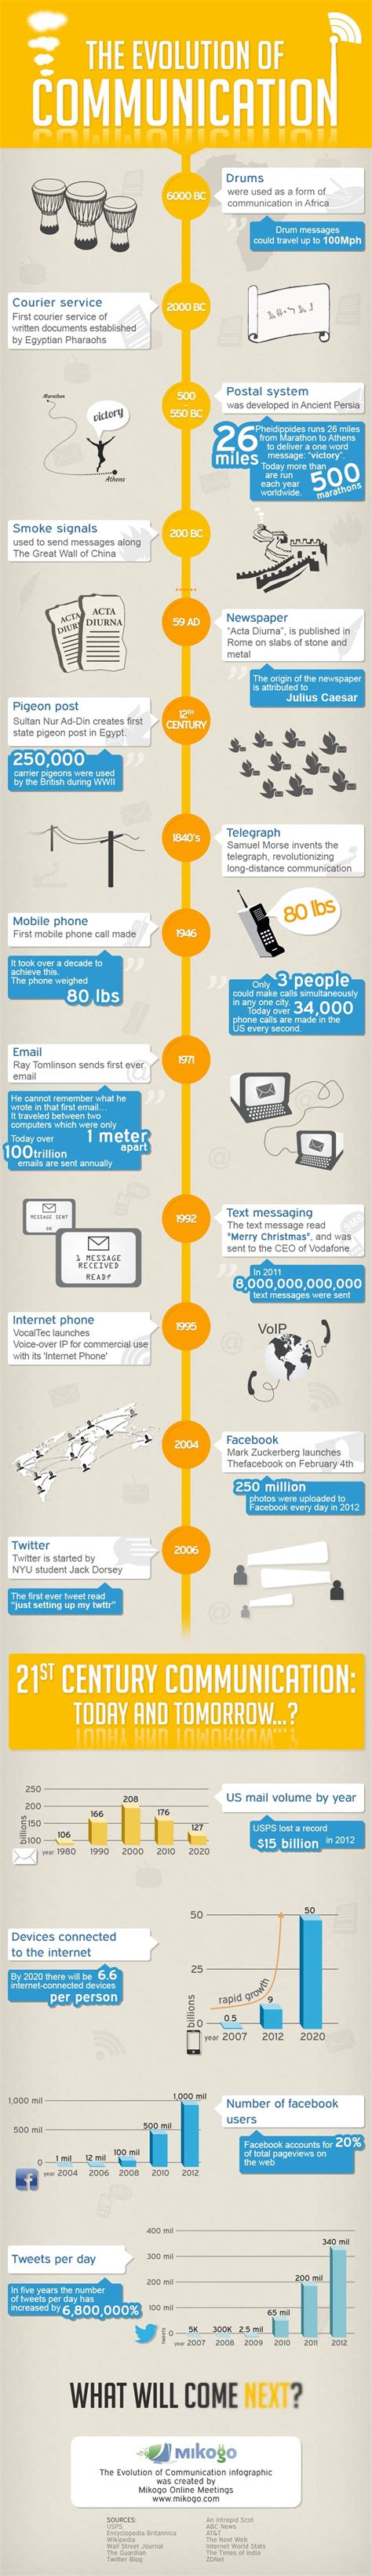 La Evolución De La Comunicación Según Mikogo Infografía